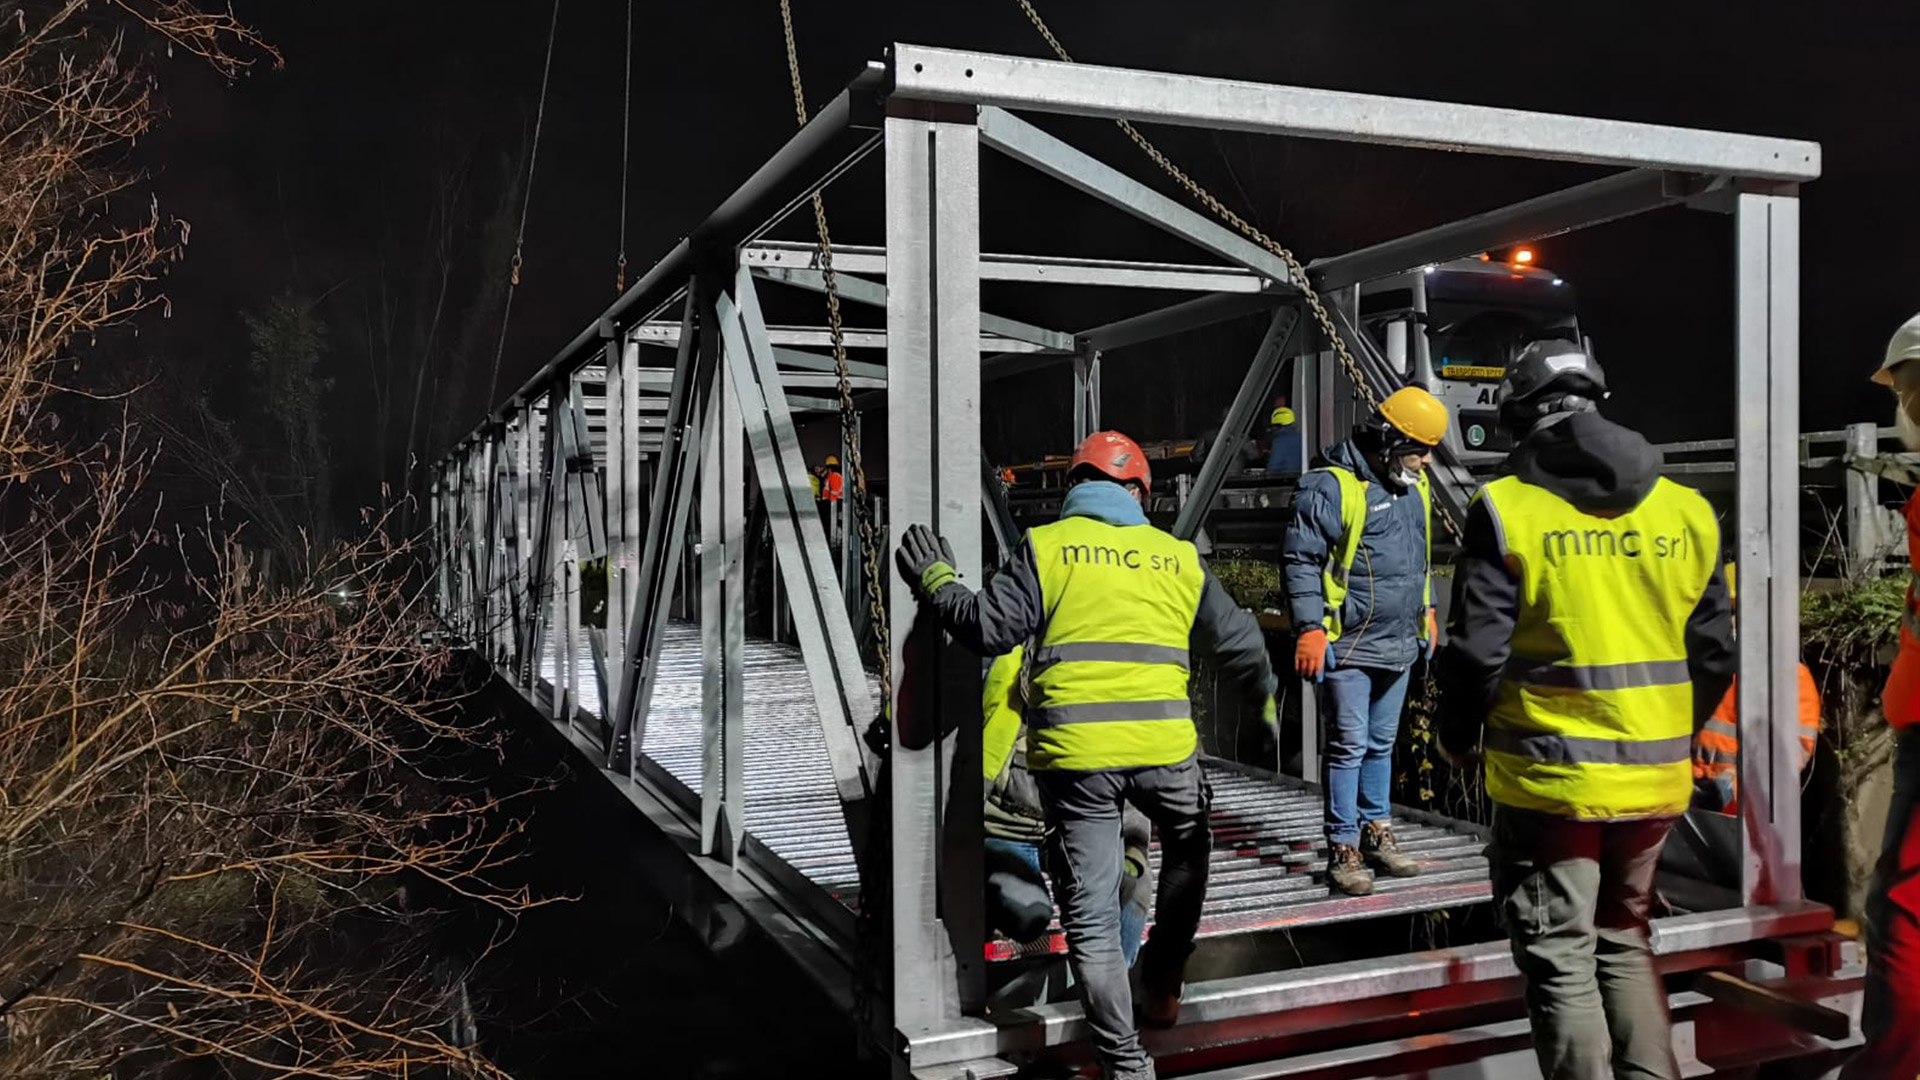 Ronzoni srl per le infrastrutture stradali. Realizzazione e posizionamento Ponte in notturna a Vigevano (PV) per il parco del Ticino.